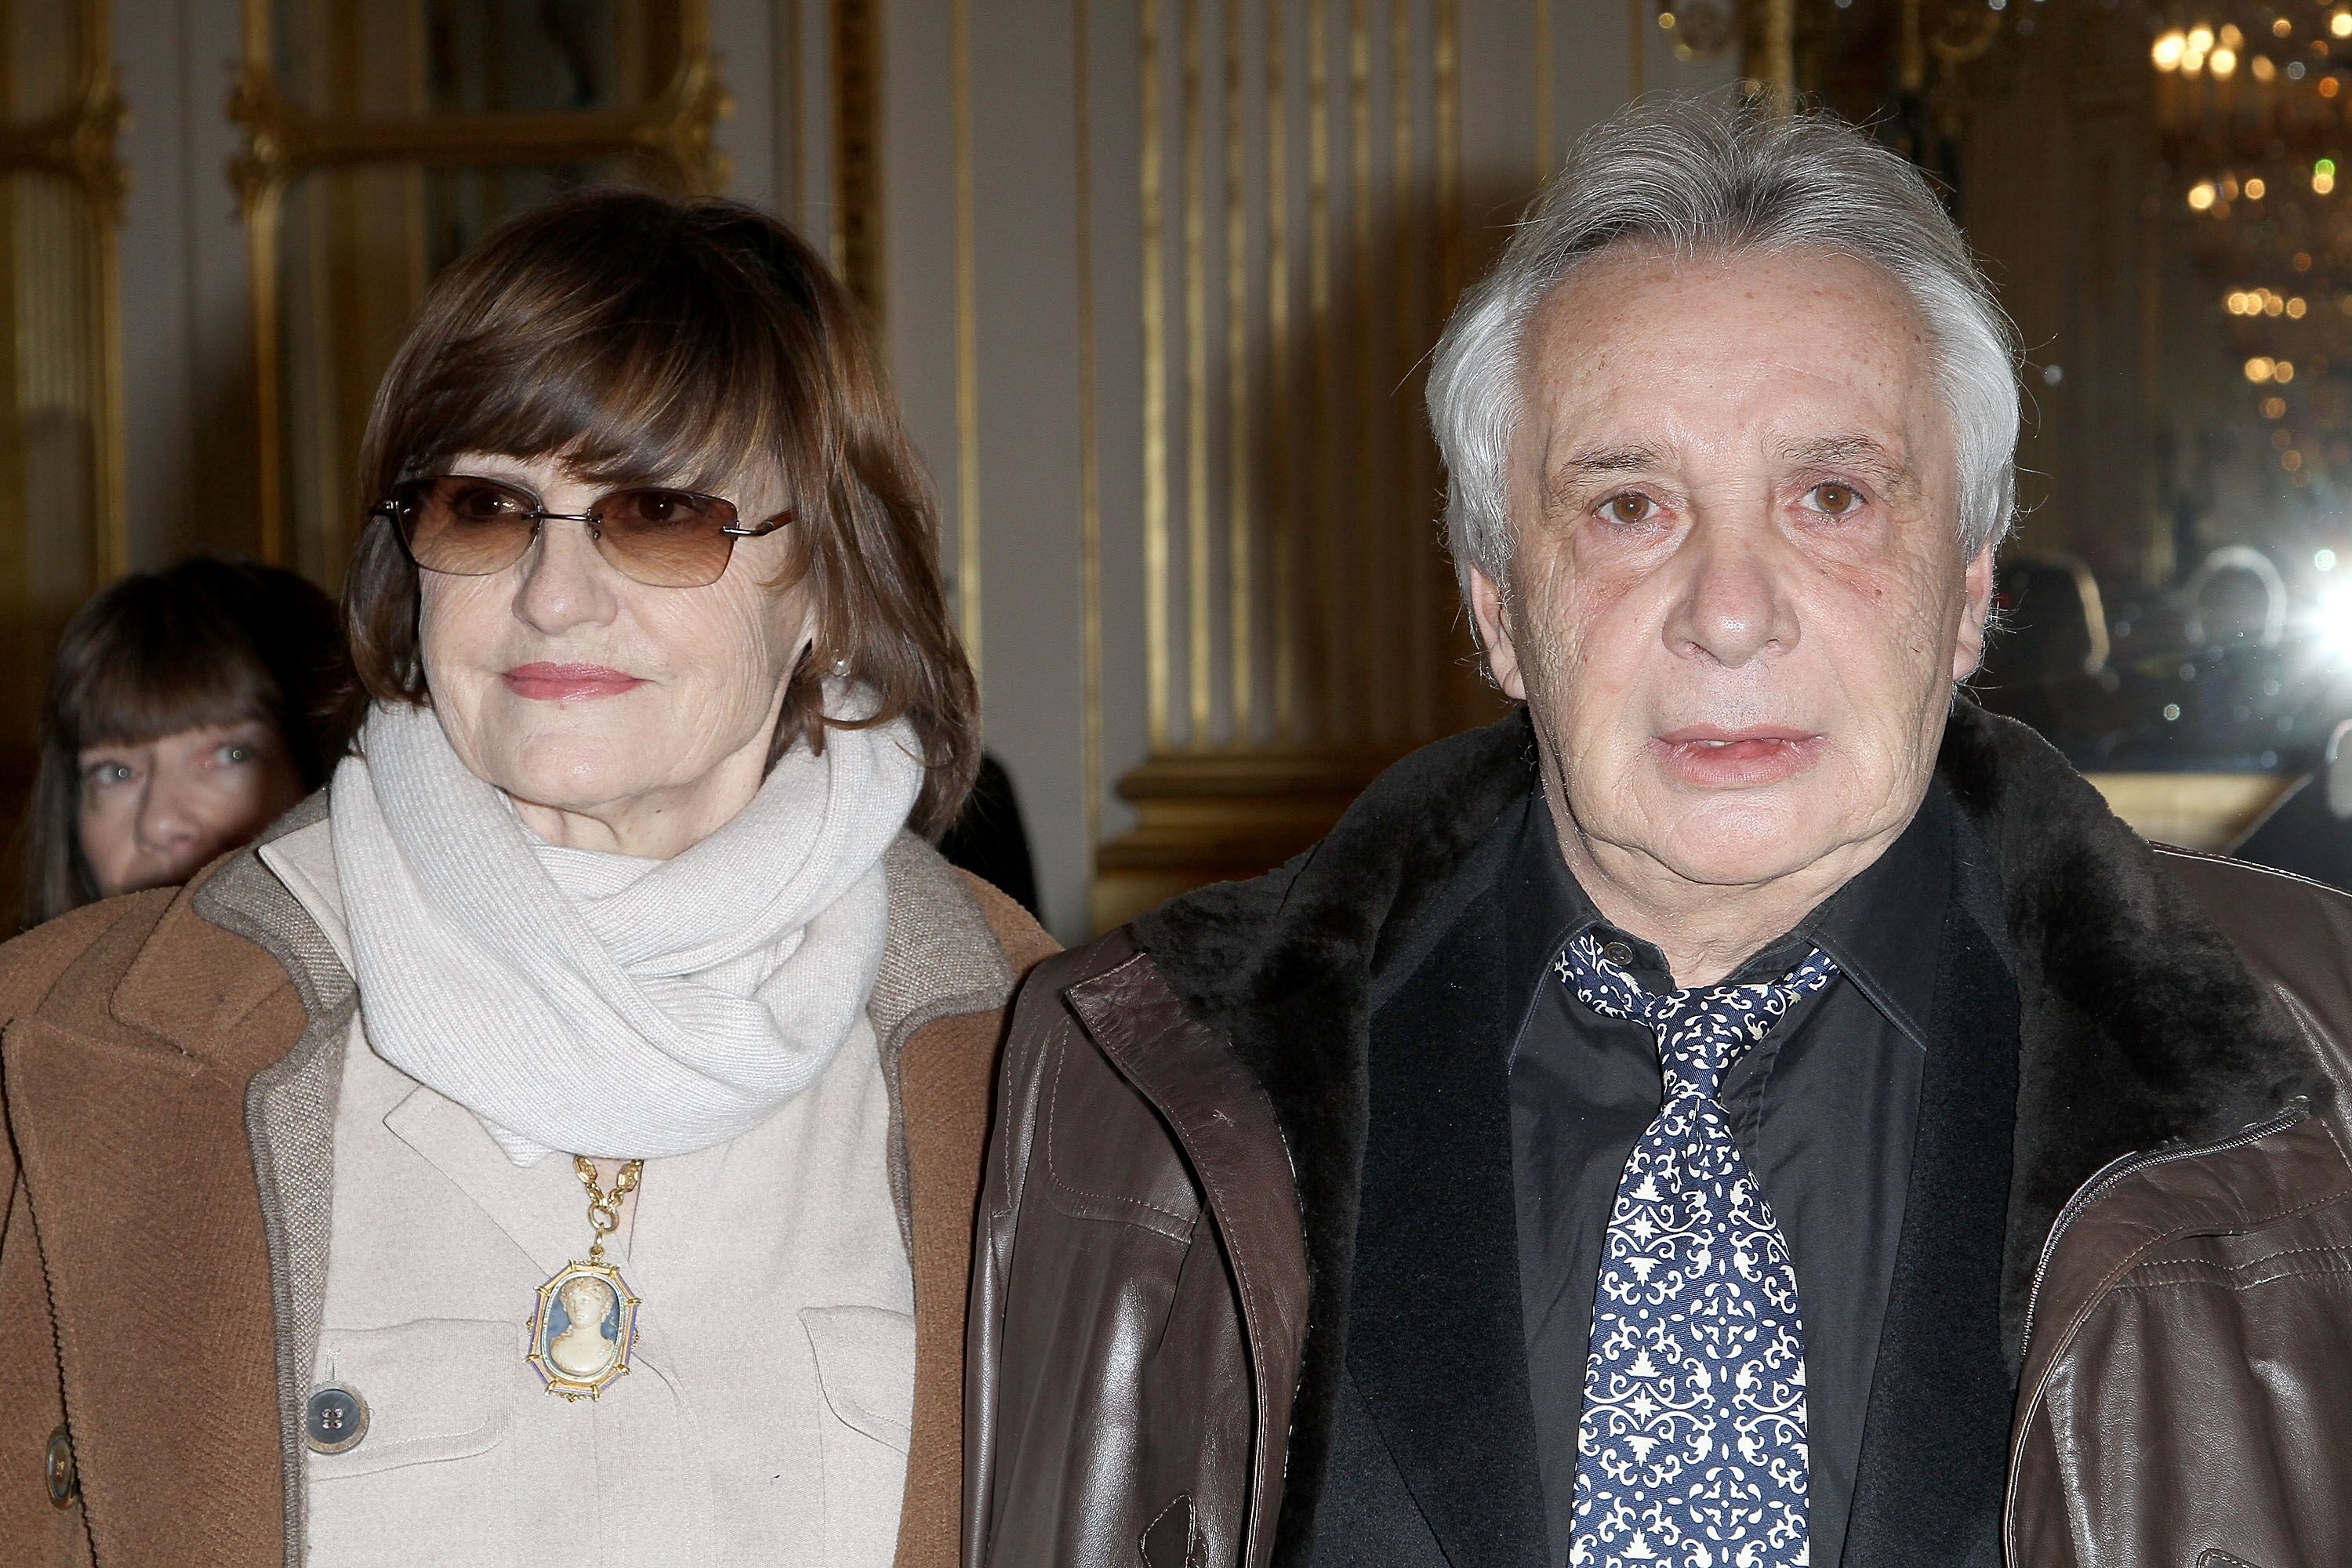 Michel Sardou et Anne-Marier Perier au Ministère de la Culture le 8 février 2012 à Paris, France. | Photo : Getty Images